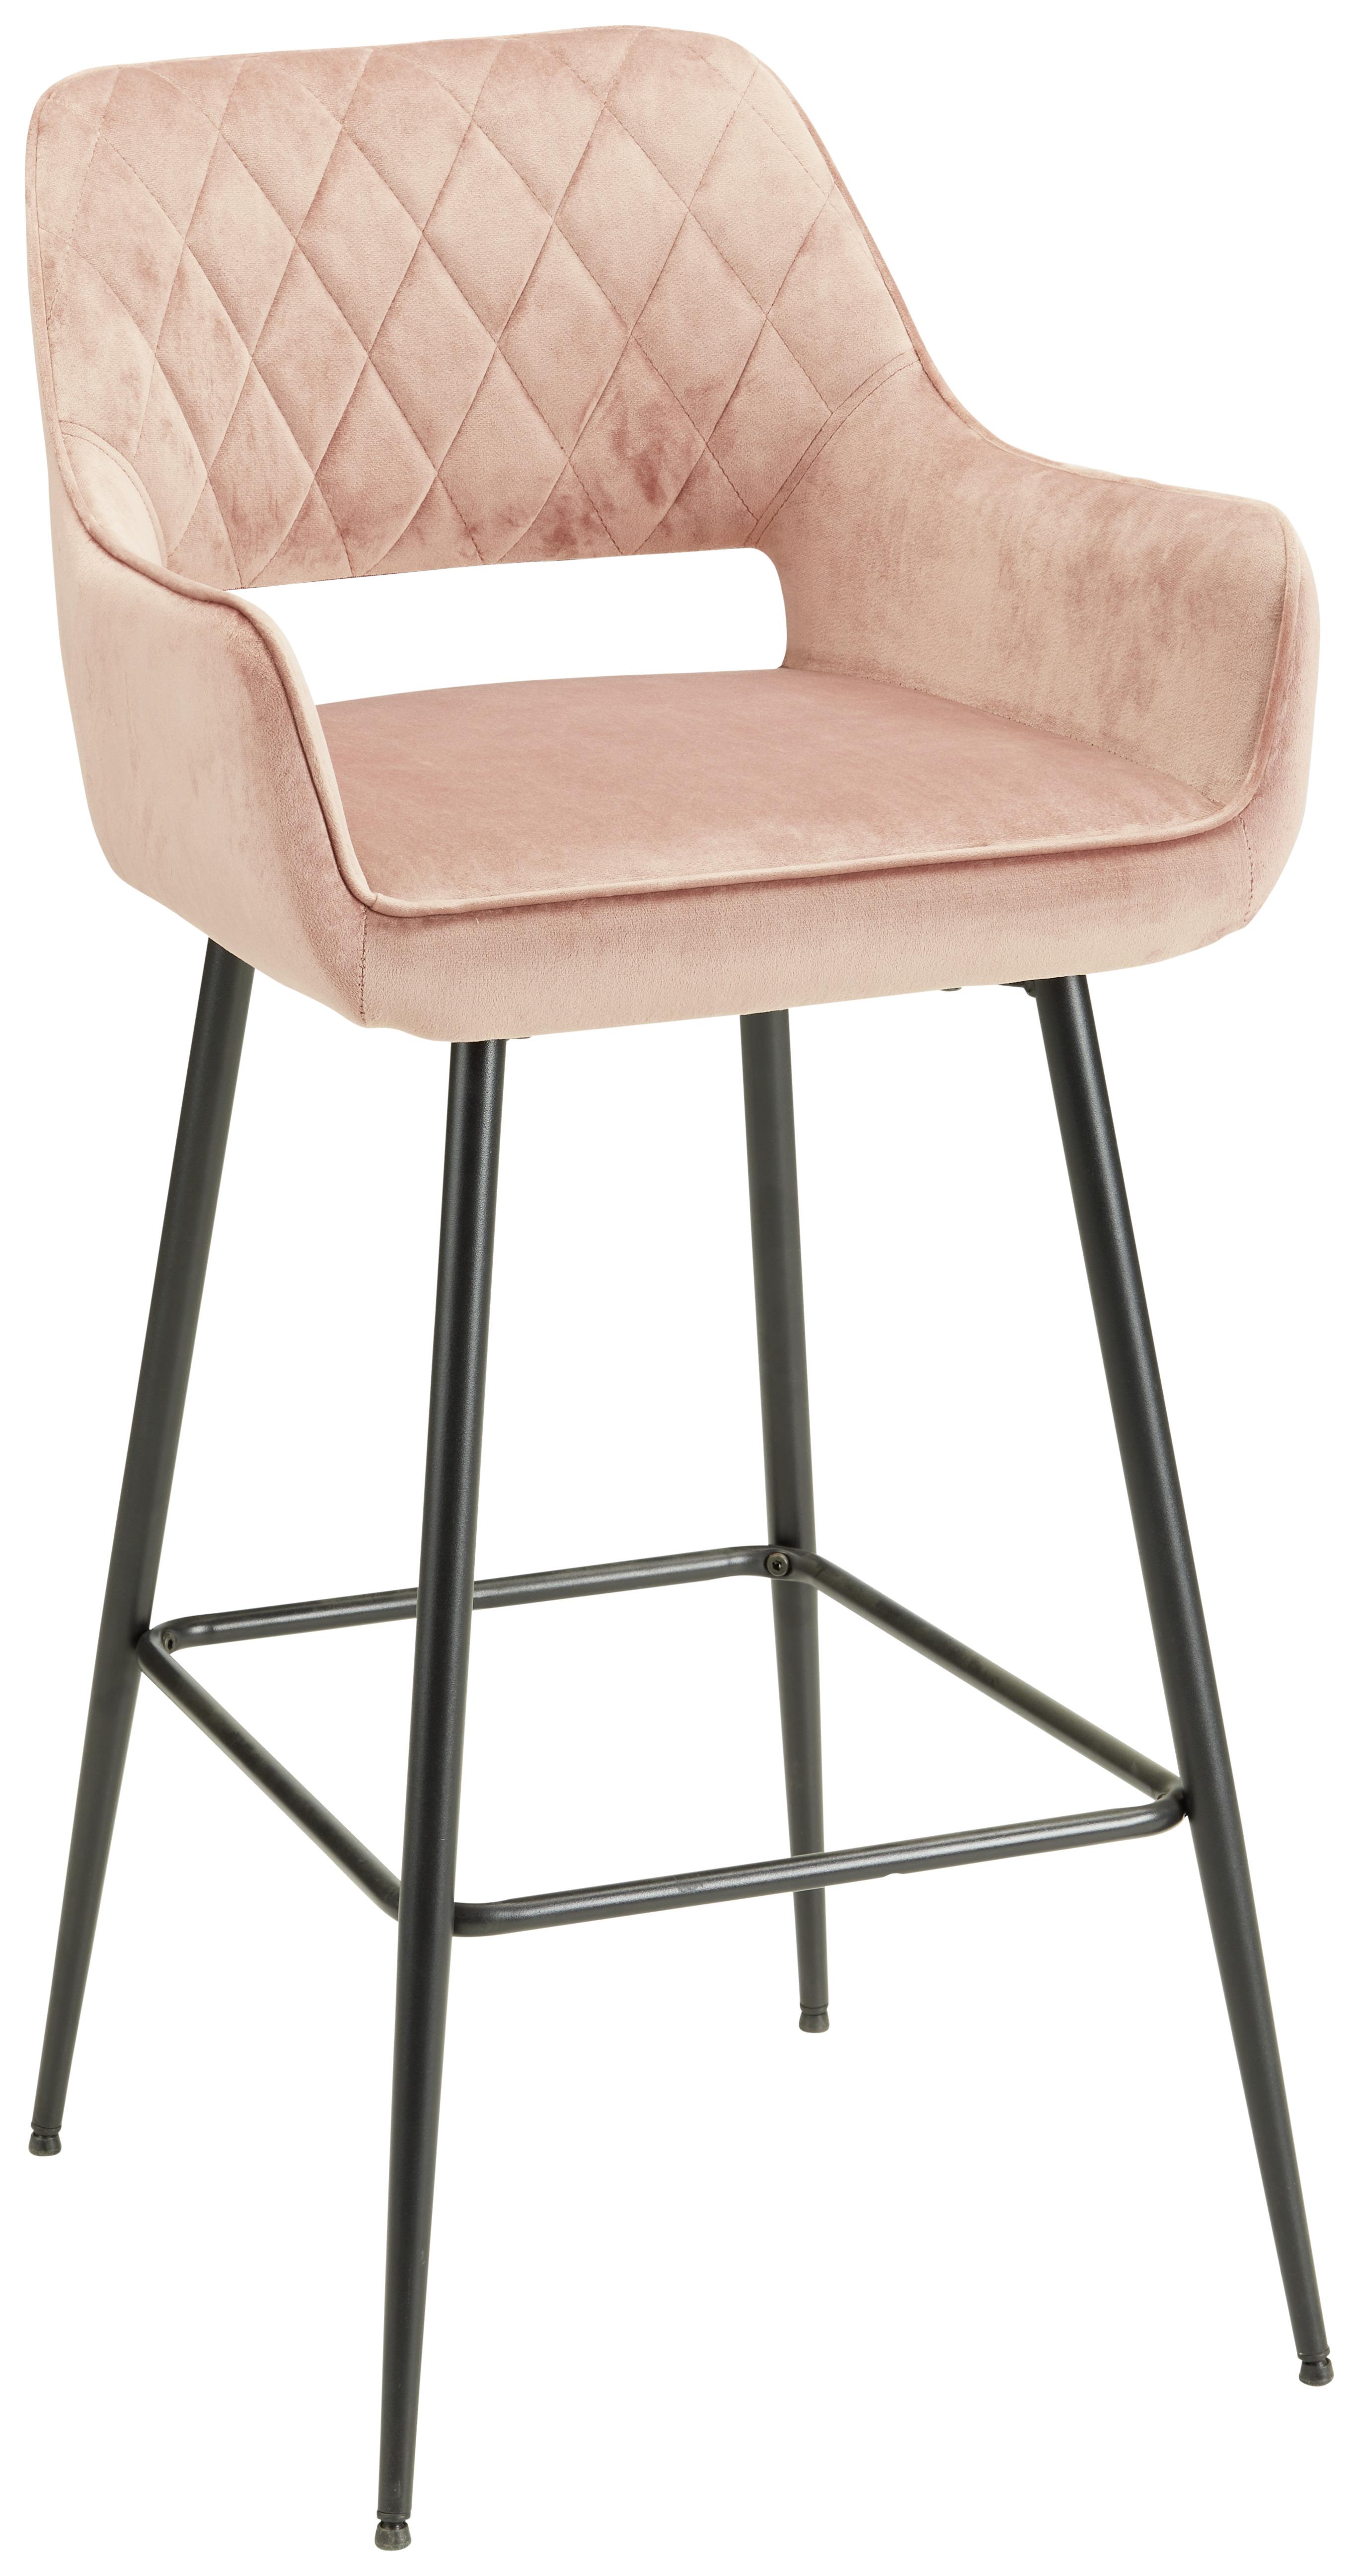 Barski Stol Serafina - roza/črna, Moderno, kovina/tekstil (54/105/60cm) - Modern Living